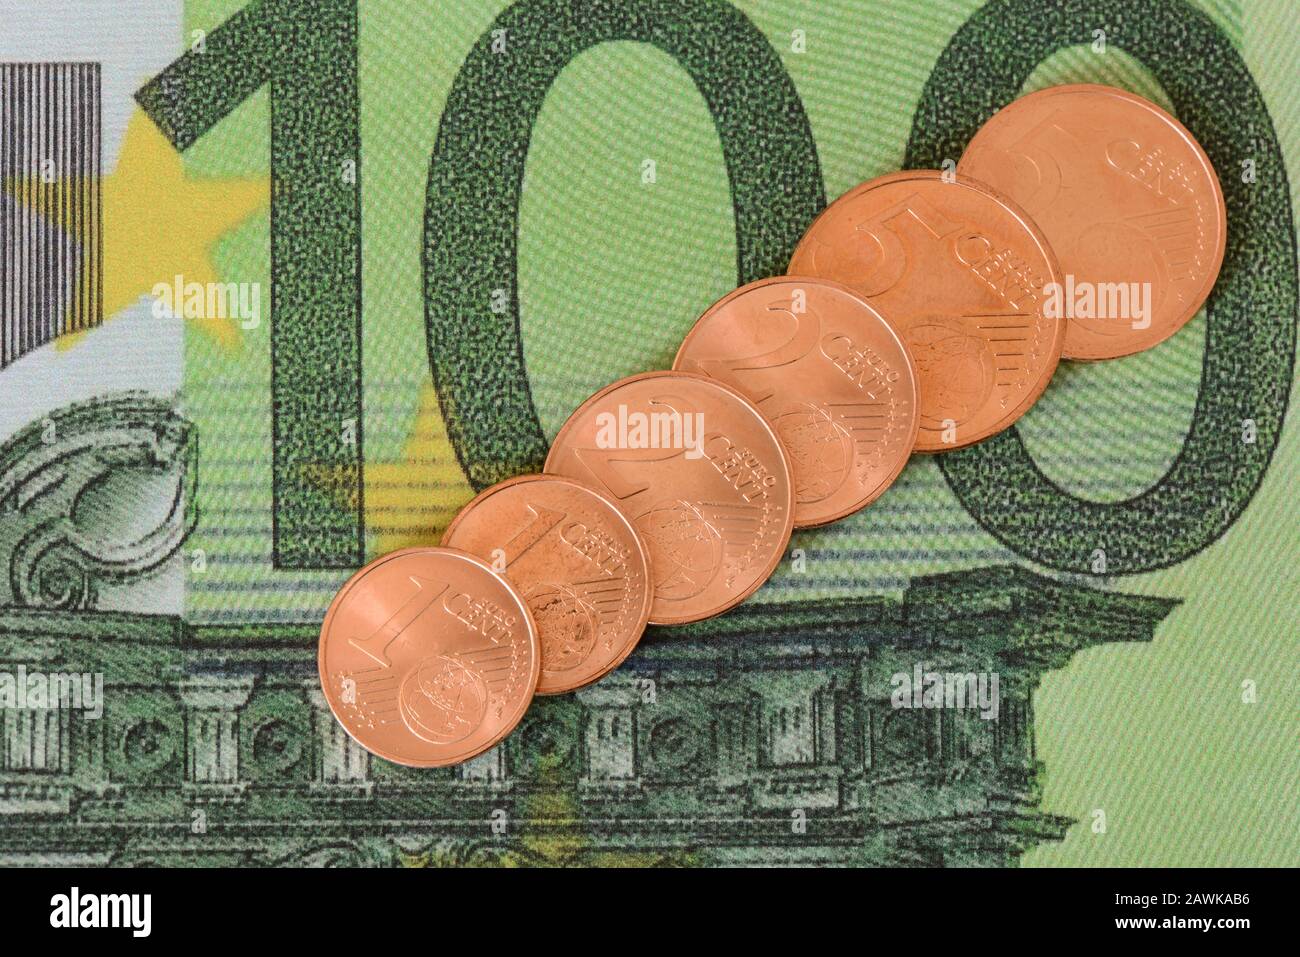 Medienberichten zufolge plant die neue EU-Kommission, alle 1-, 2- und 5cent-Münzen abzuschaffen Stockfoto